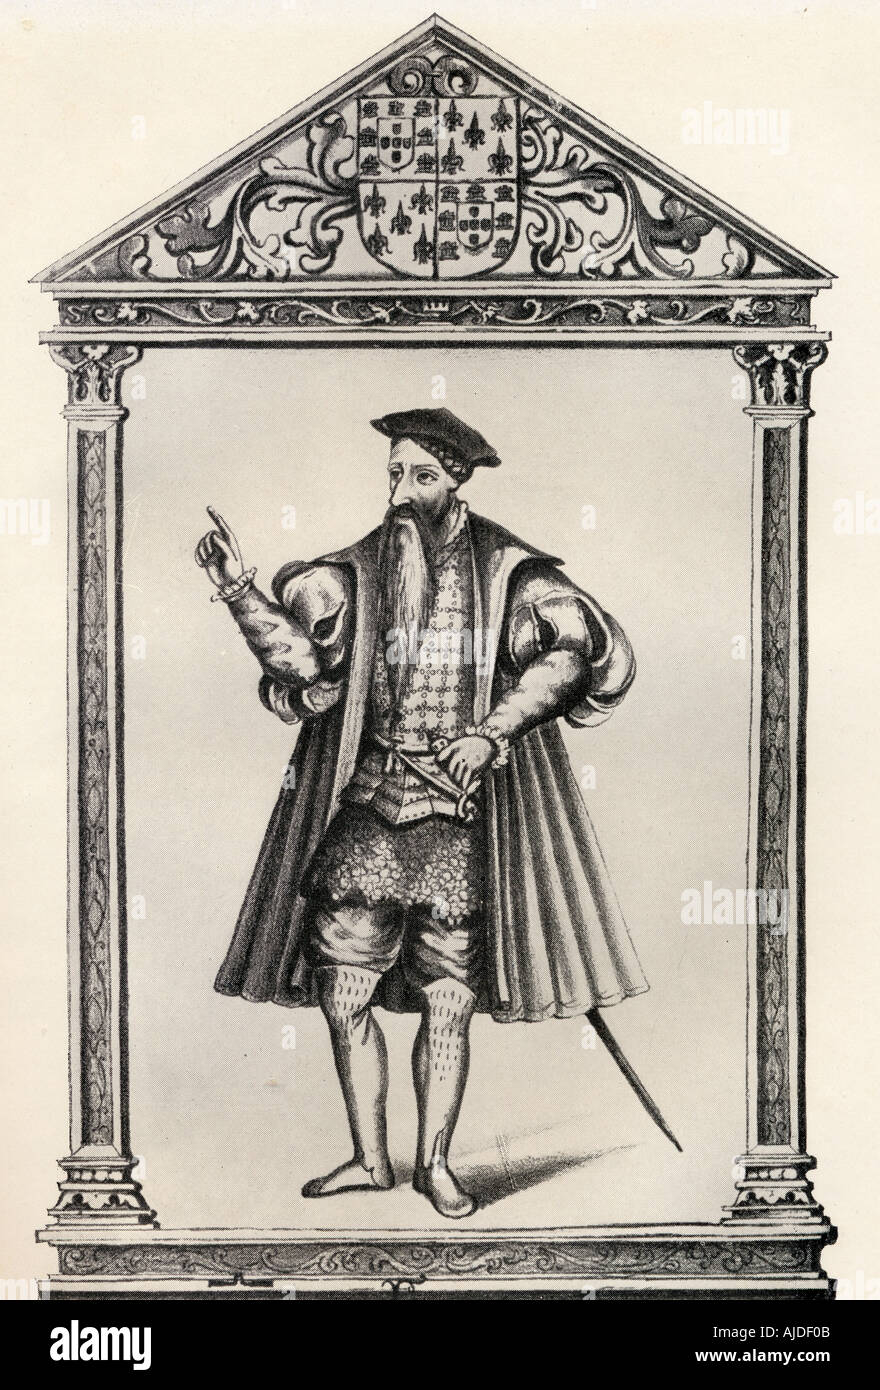 Afonso de Albuquerque, duc de Goa, c.1453 - 1515. L'amiral Portugeuse, 1e vice-roi de l'Inde portugaise. Banque D'Images